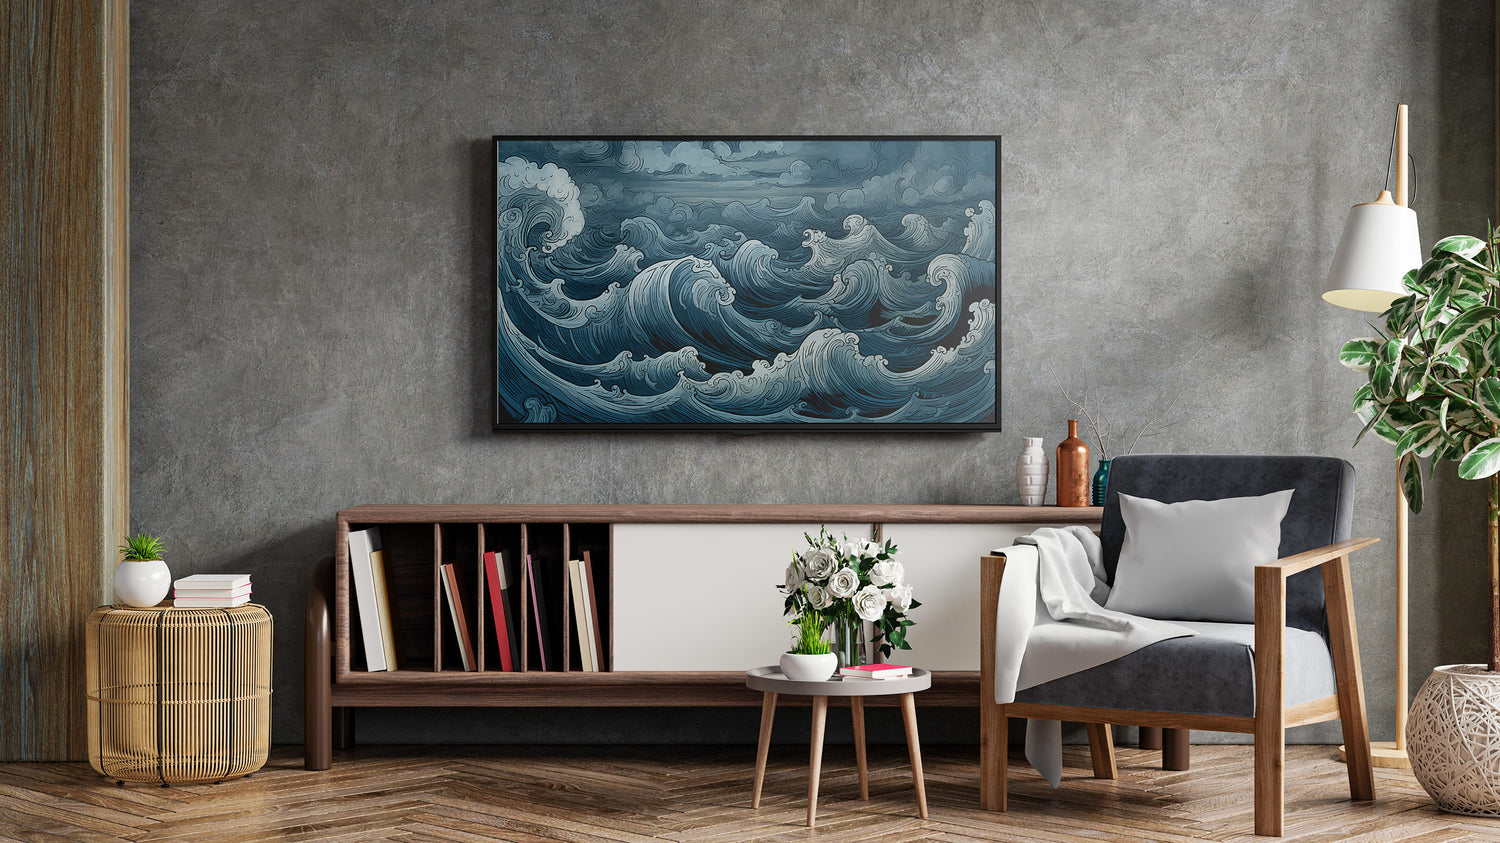 Samsung Frame TV Art Picture Ocean Waves Storm Digital Download